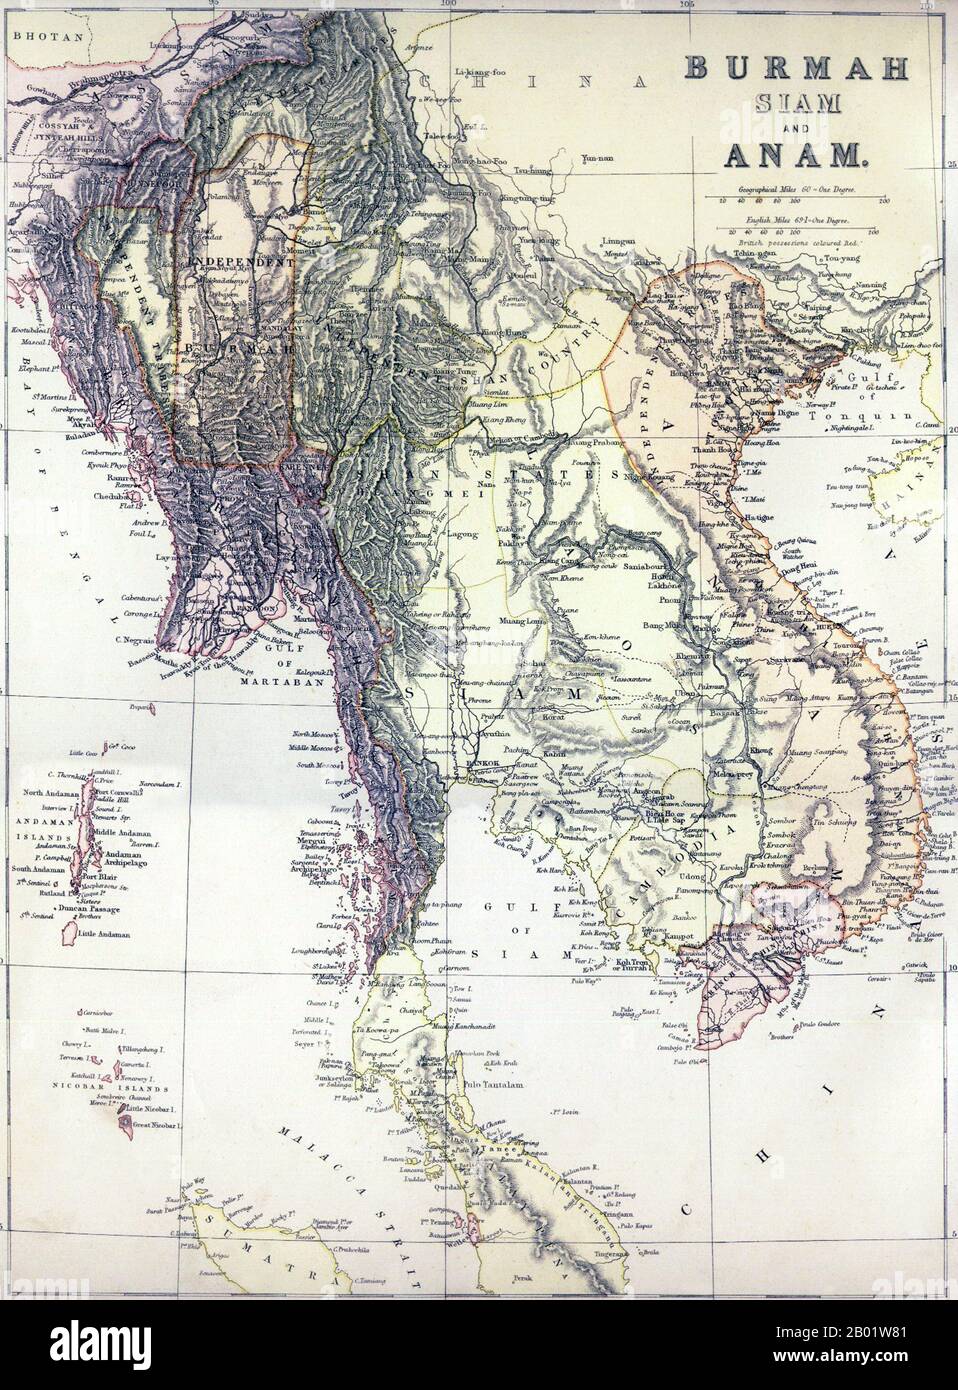 Sud-est asiatico: "Burmah, Siam e Anam". Mappa della grande Indocina e della parte occidentale dell'arcipelago malese-indonesiano, 1886. Una mappa politica del sud-est asiatico continentale comprendente la Birmania, la Thailandia, il Laos, la Cambogia e il Vietnam, nonché la Malaysia peninsulare, le isole Andamane e Nicobare, e parte di Sumatra pubblicata, apparentemente, poco prima della terza guerra anglo-birmana (1885-1886) che estinguerebbe l'indipendenza birmana, mostra "Birmania indipendente" in un rettangolo approssimativo intorno a Mandalay. A est si trova il "Paese indipendente Shan" che comprende gli Stati Shan birmani. Foto Stock